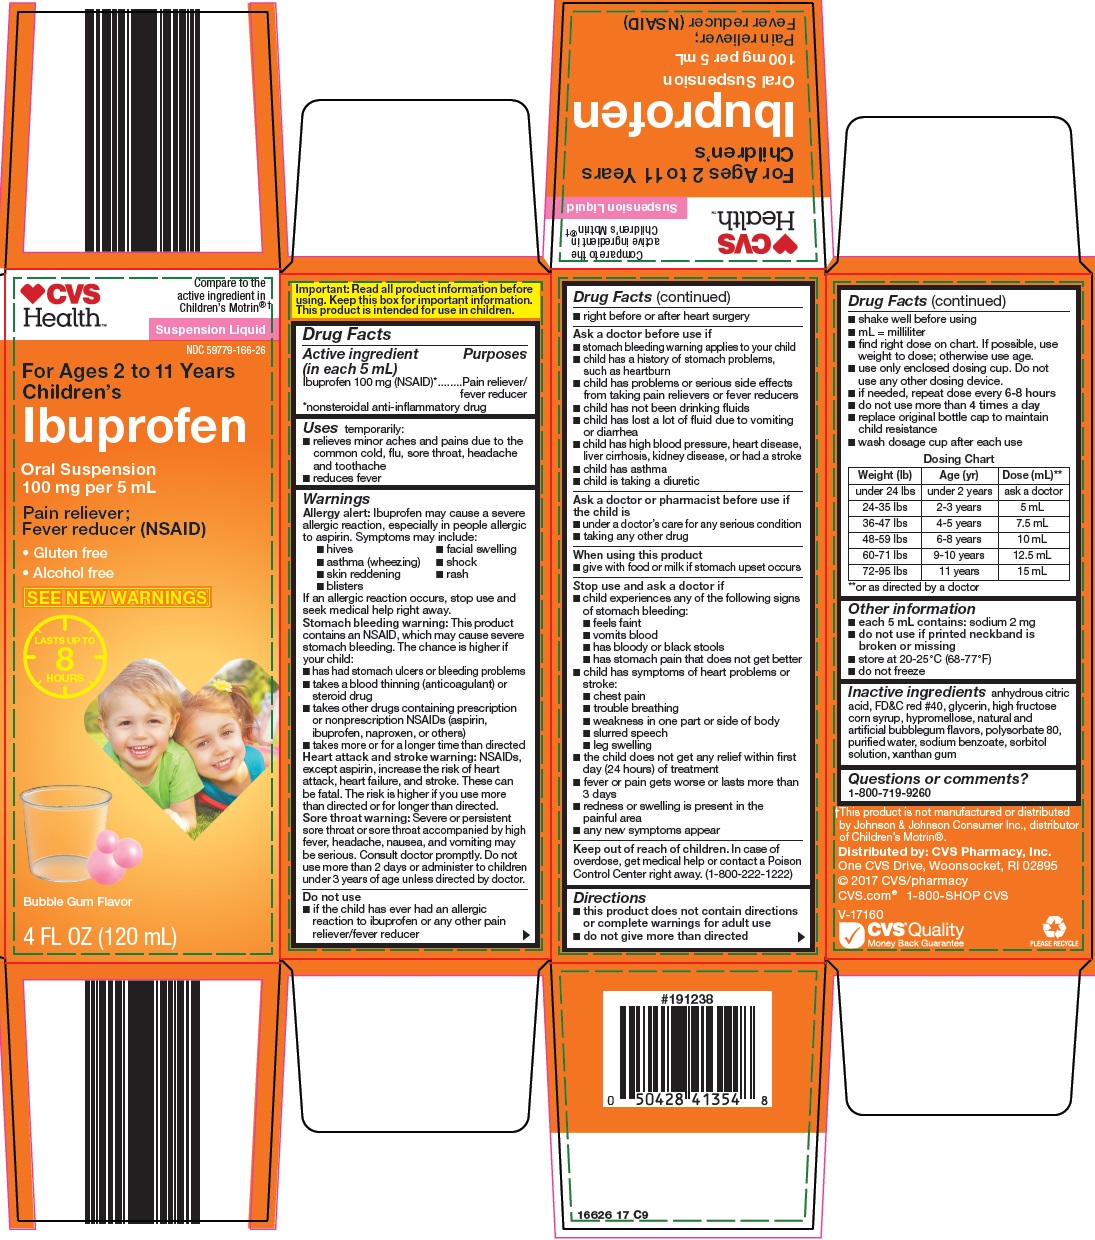 166-17-ibuprofen.jpg